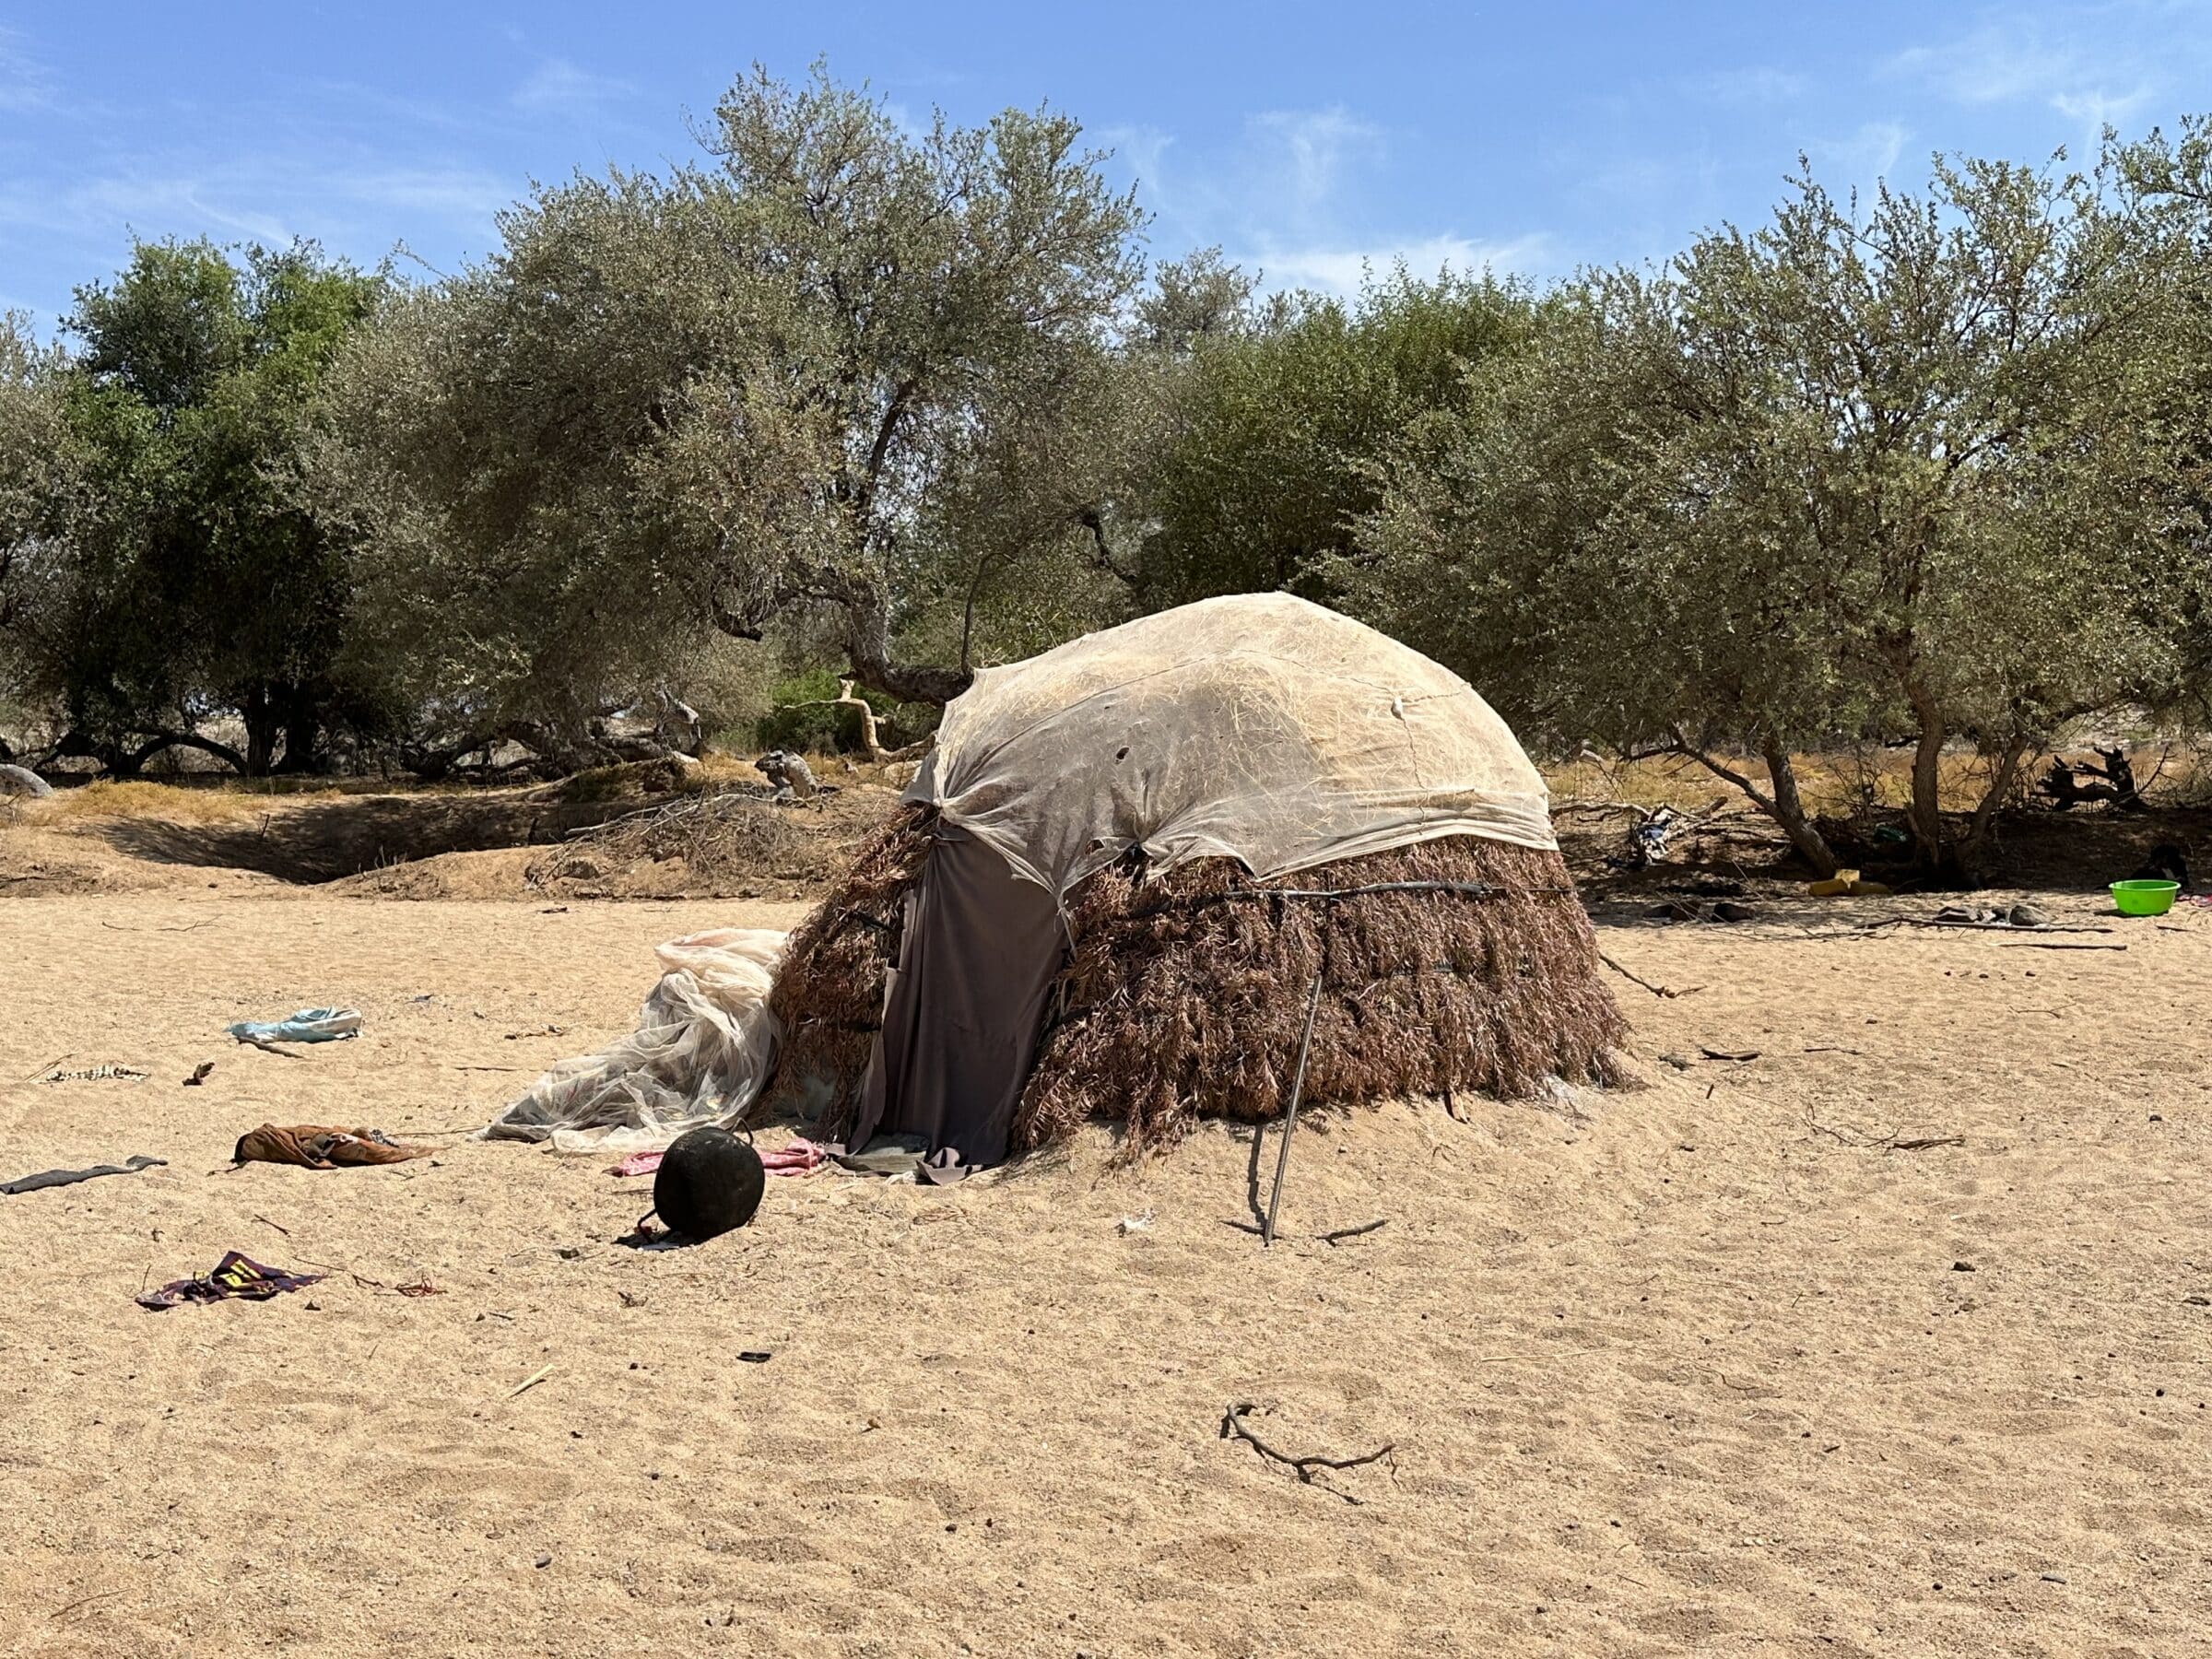 Woning van semi-nomaden | Rondreis Angola